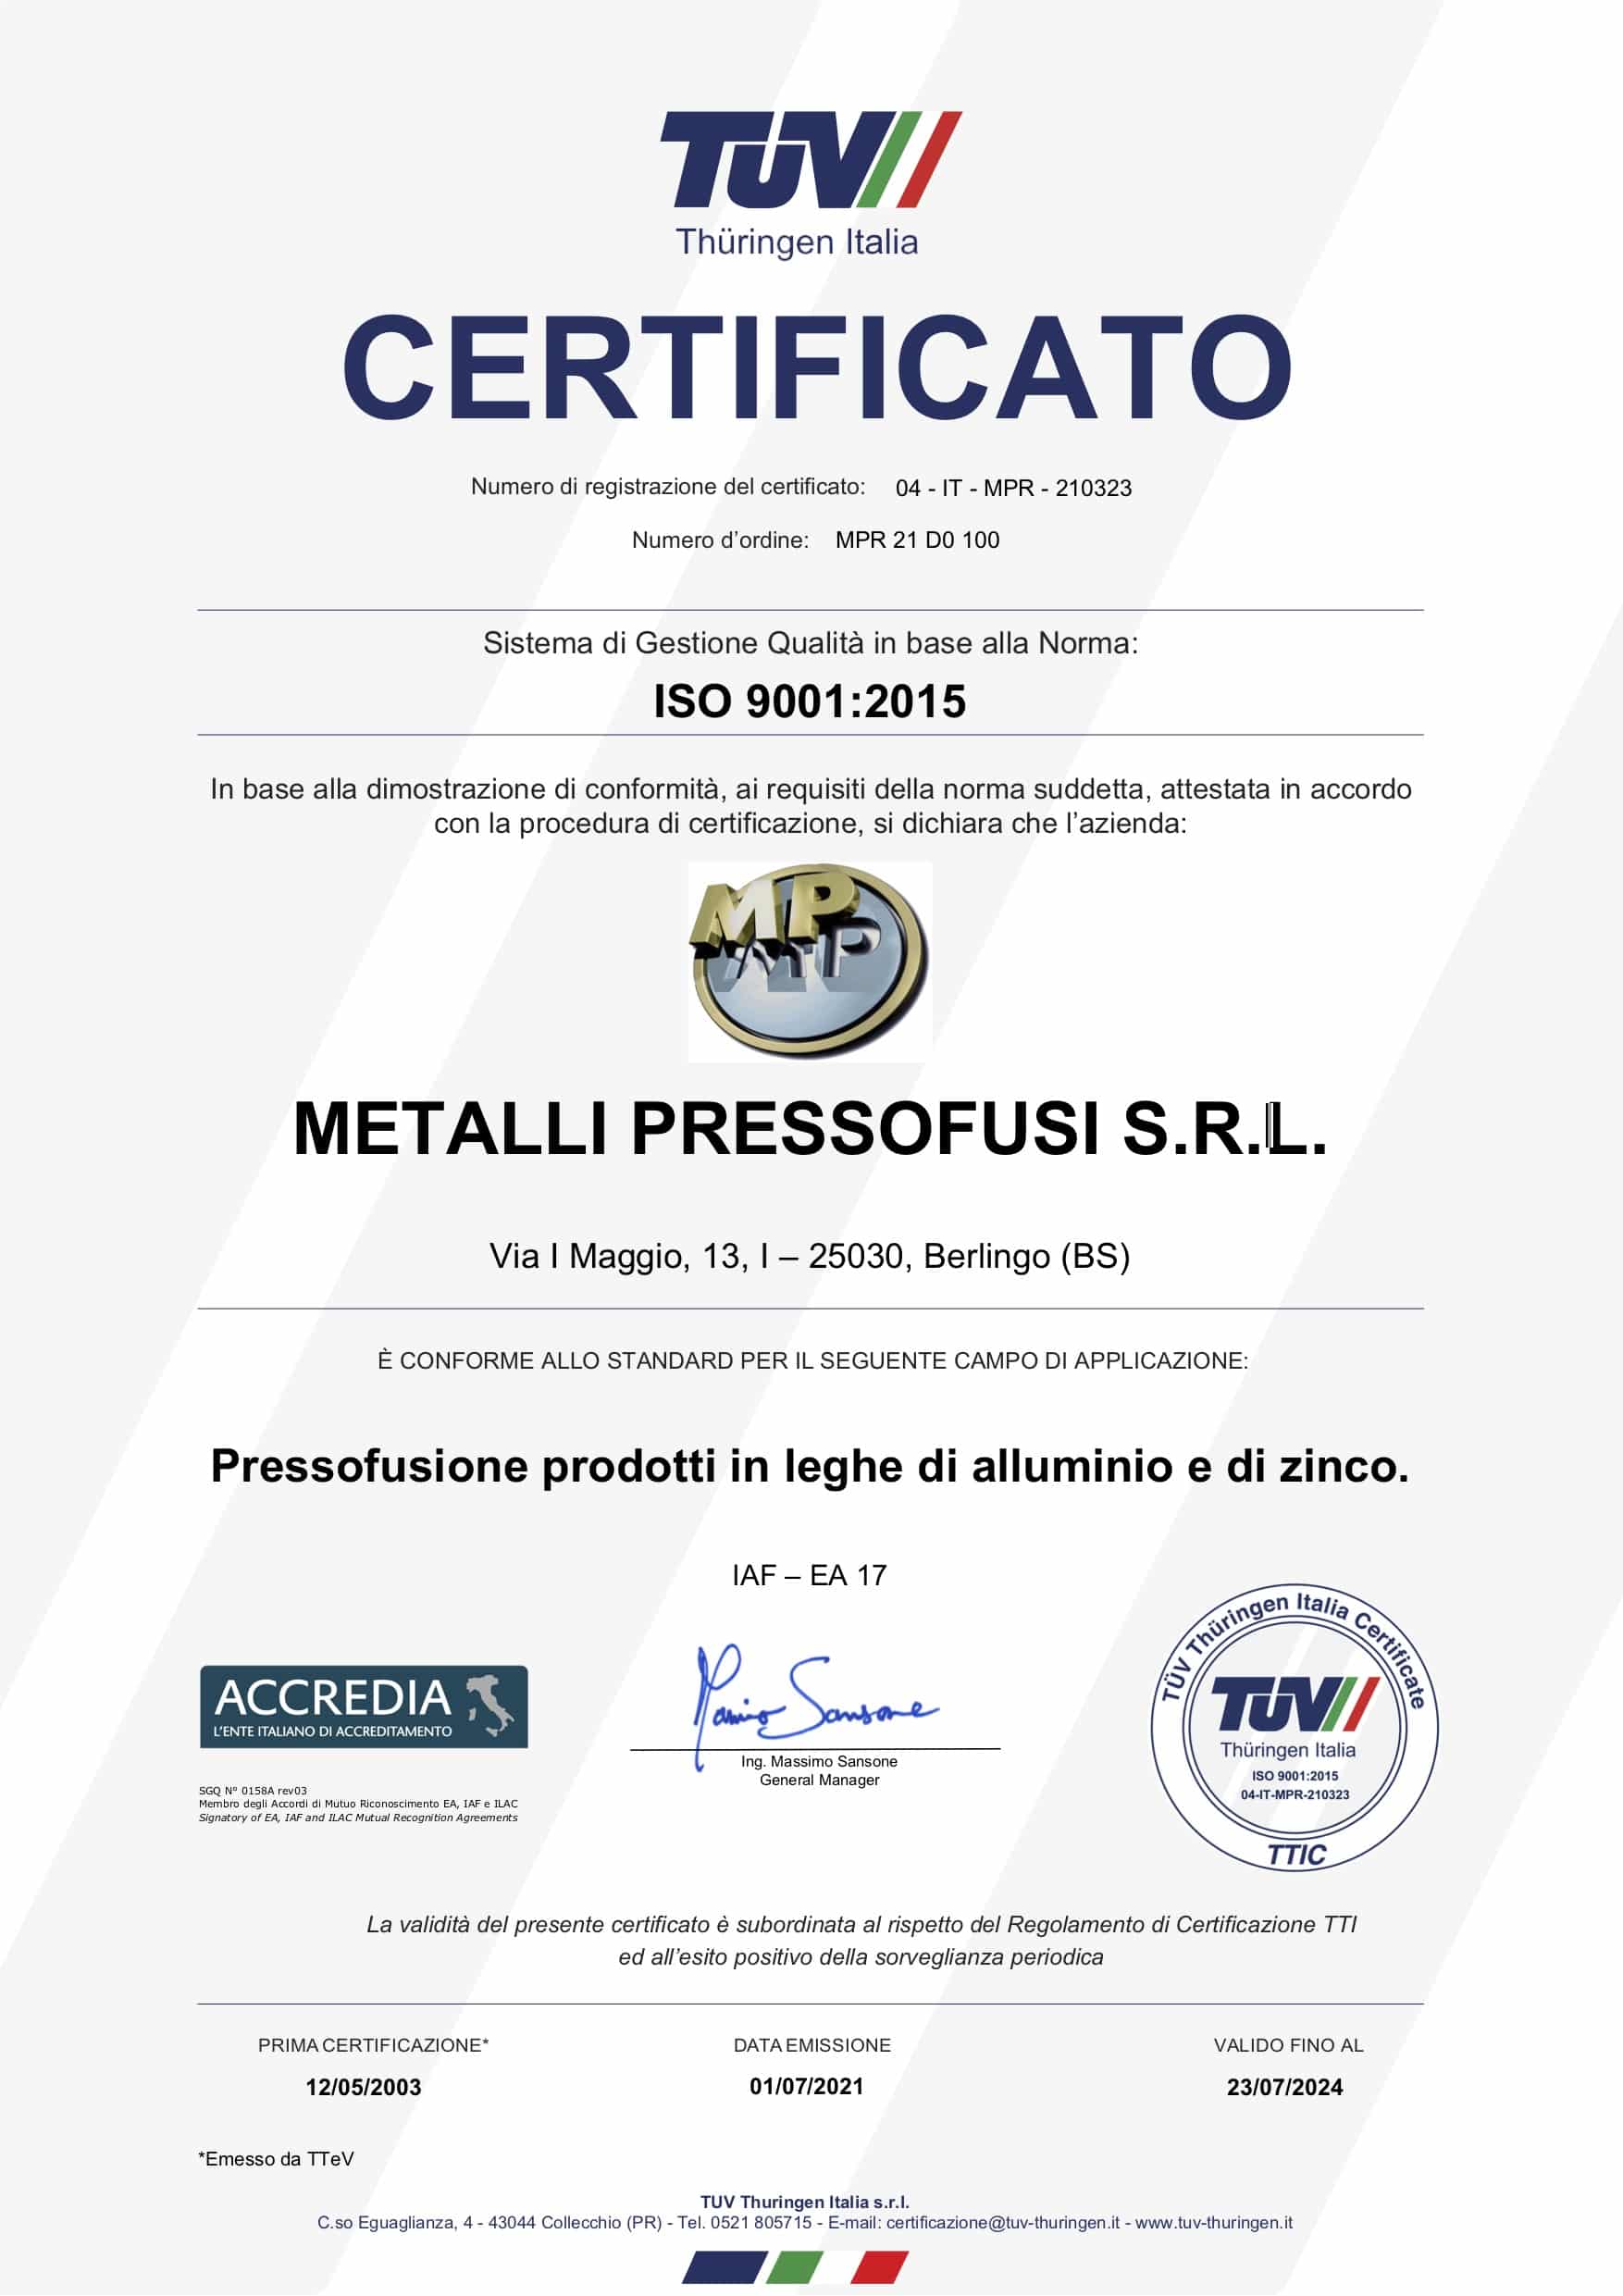 Certificato ISO 9001:2015 della fonderia in pressofusione metalli pressofusi, di Brescia, valido sino al 7/2024 e rilasciato da Accredia